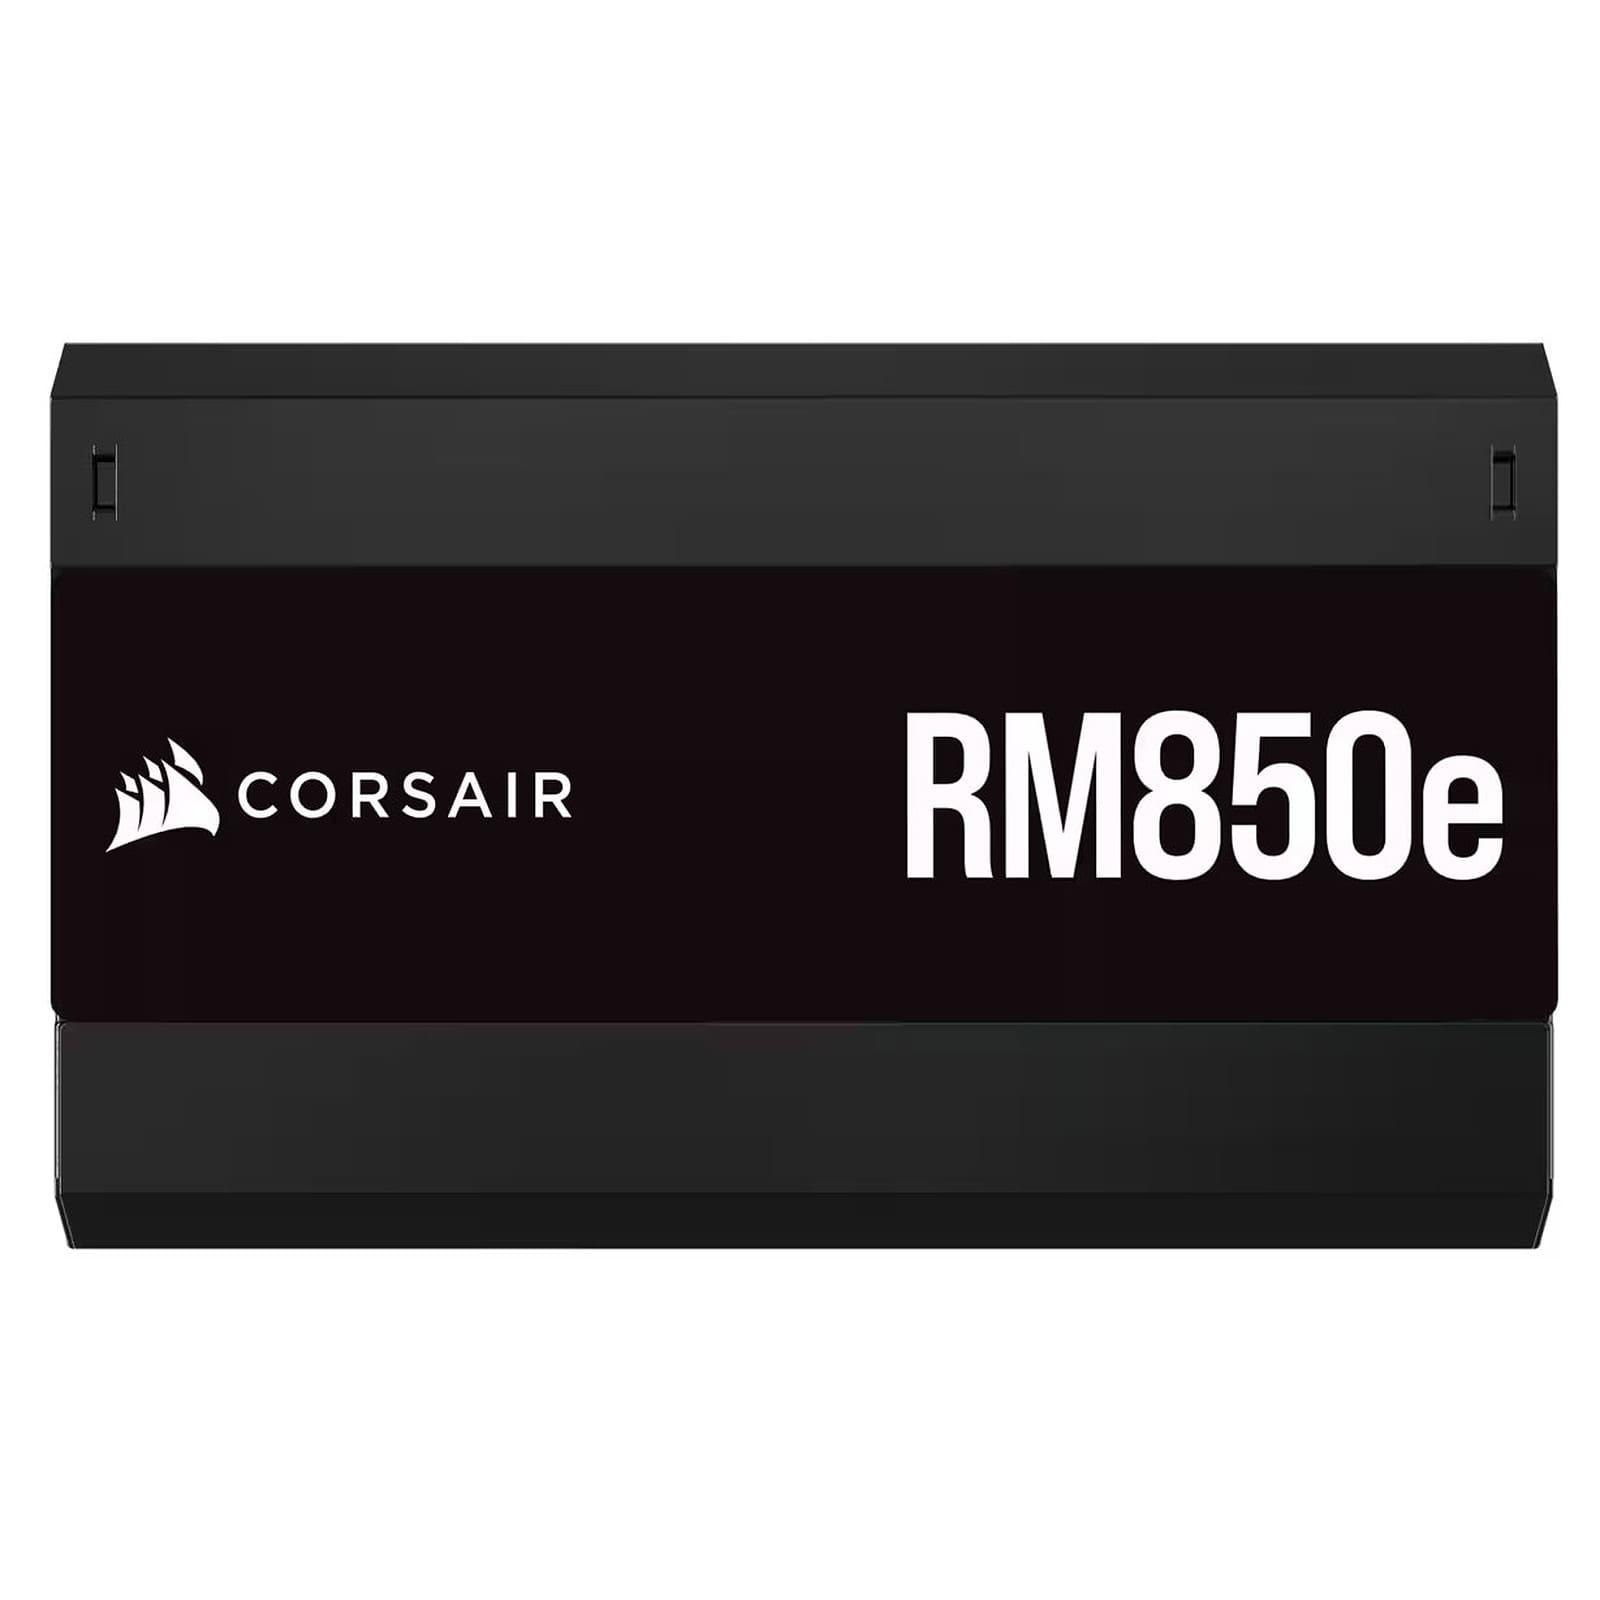  Corsair RM850e 80plus gold 850W